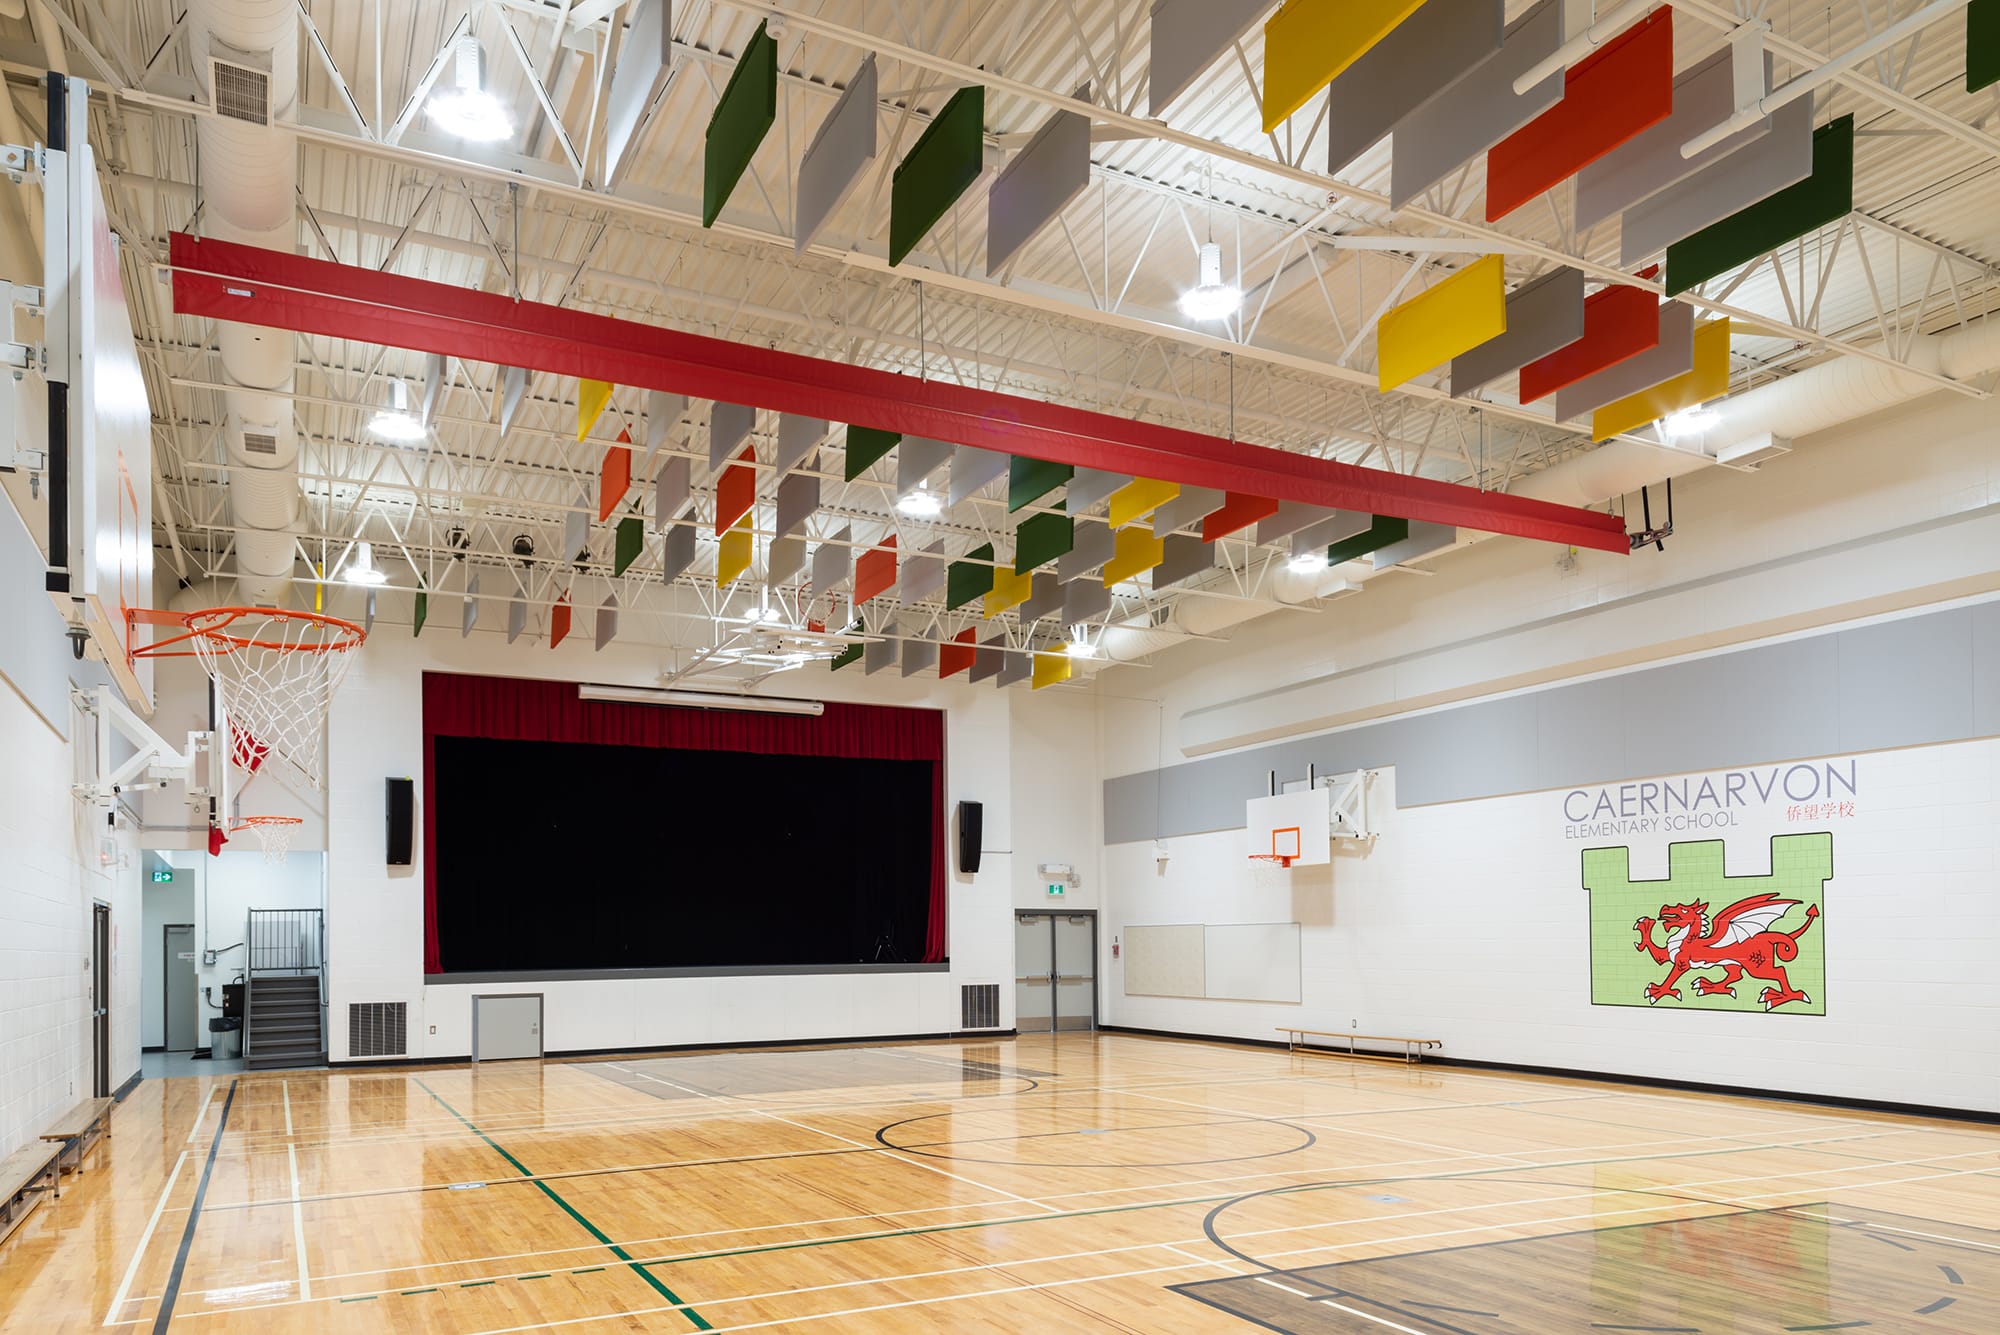 Caernarvon Elementary School gymnasium